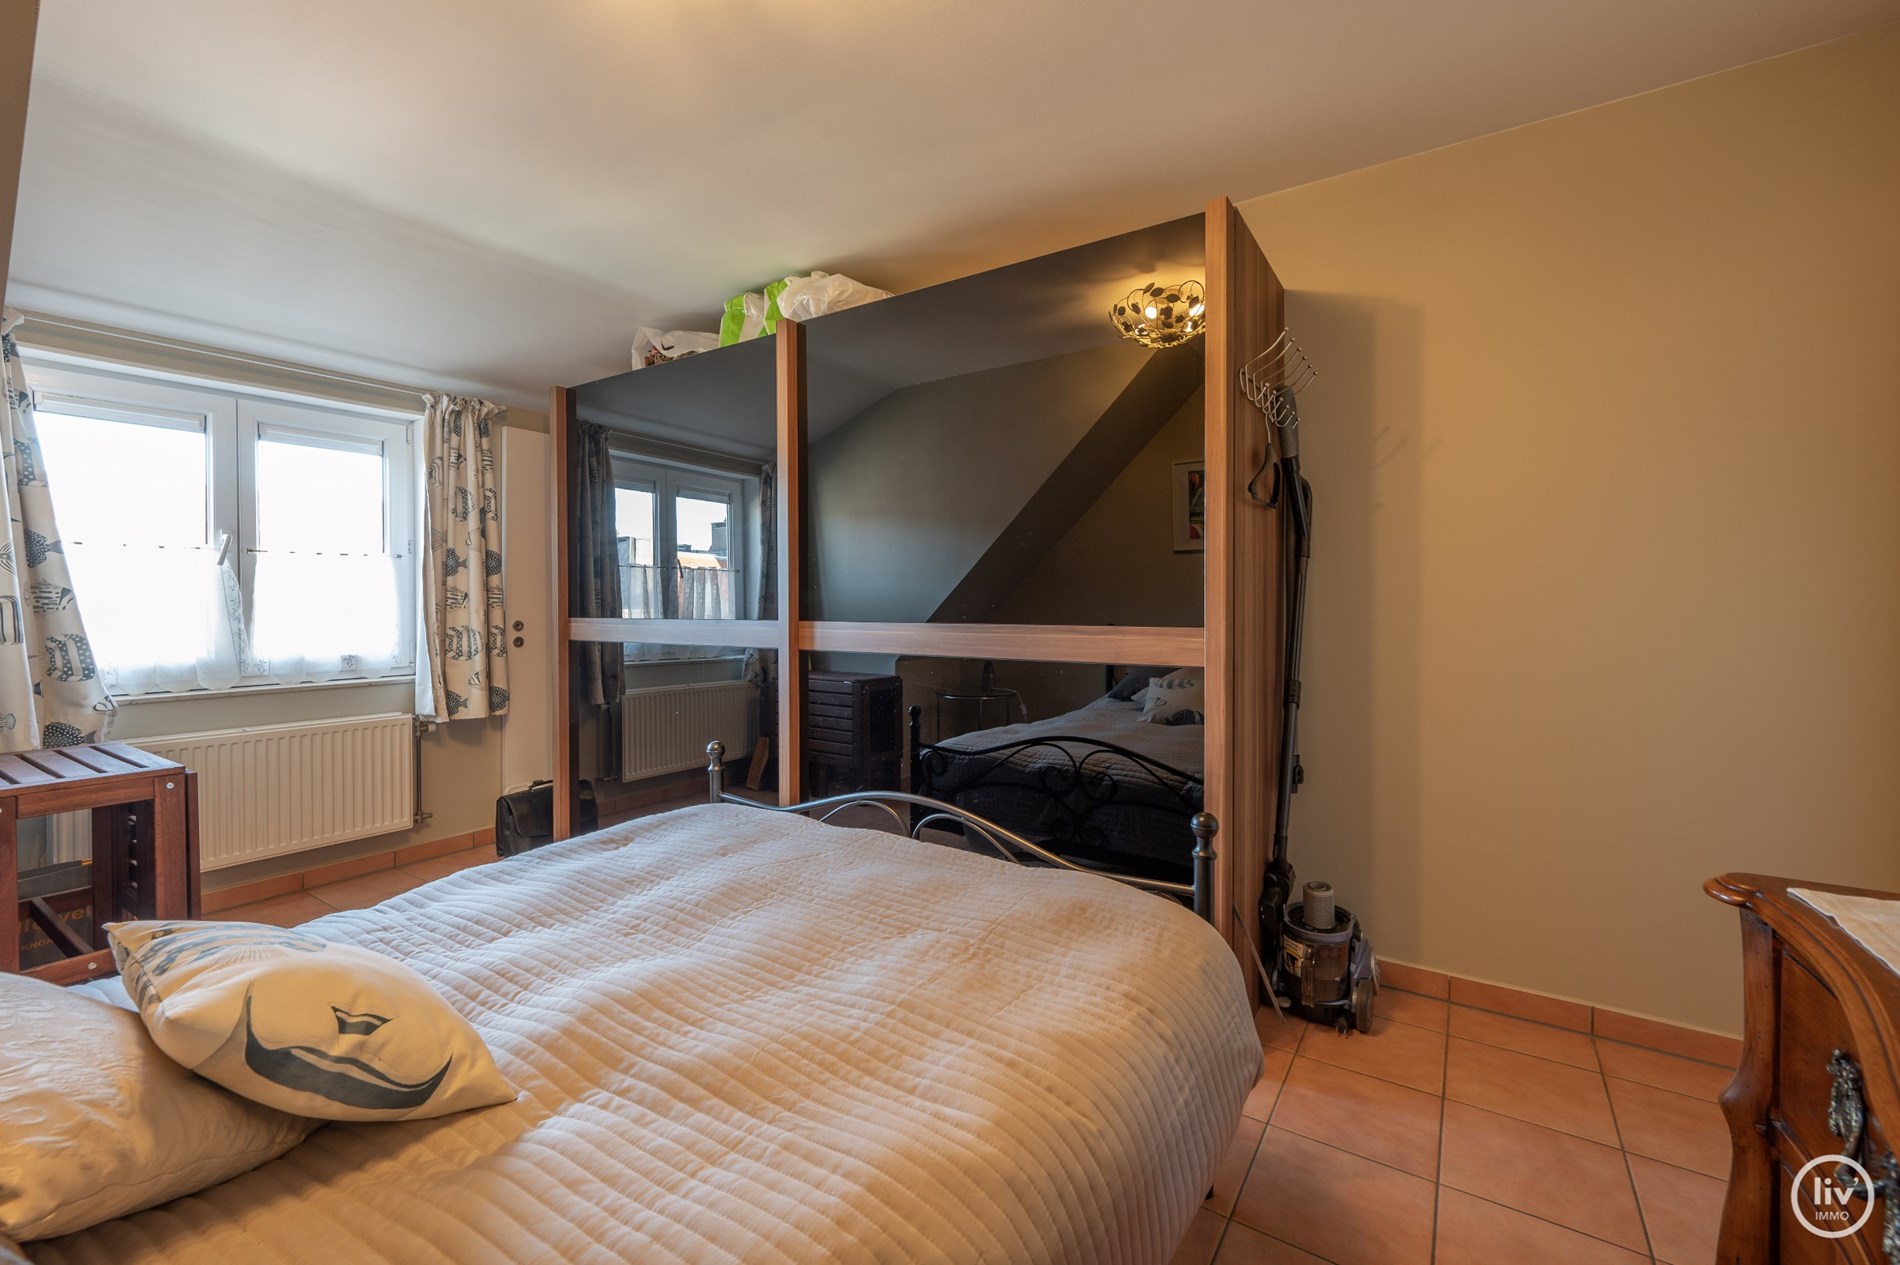 Appartement spacieux avec 3 chambres et 2 salles de bains &#224; Knokke avec vue d&#233;gag&#233;e sur la rue. 